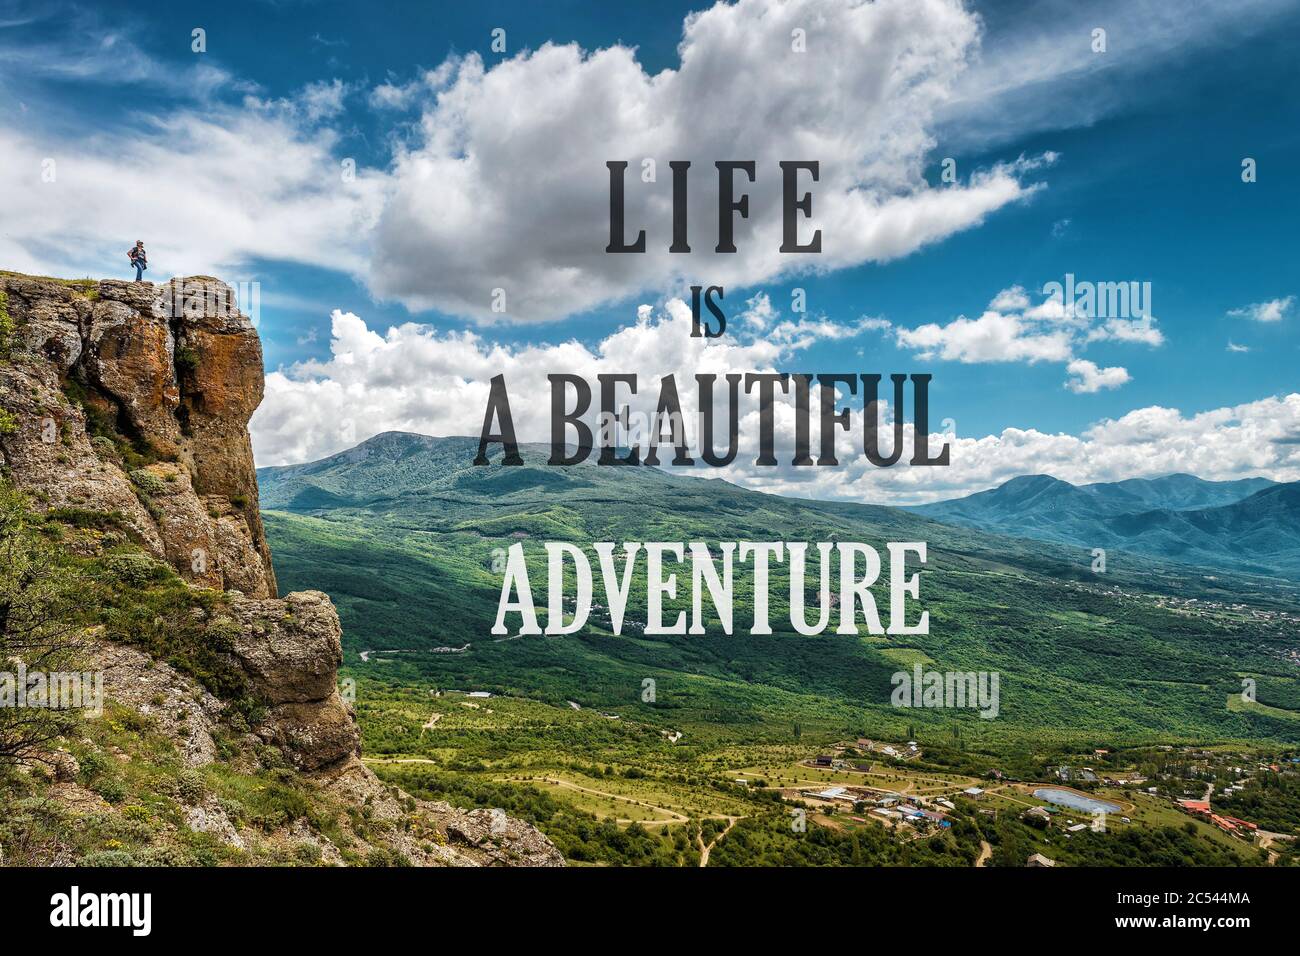 Cita motivacional inspiradora sobre el fondo de la naturaleza. Texto: La vida es una hermosa aventura. Cita positiva y hermoso paisaje de montaña. Conce Foto de stock